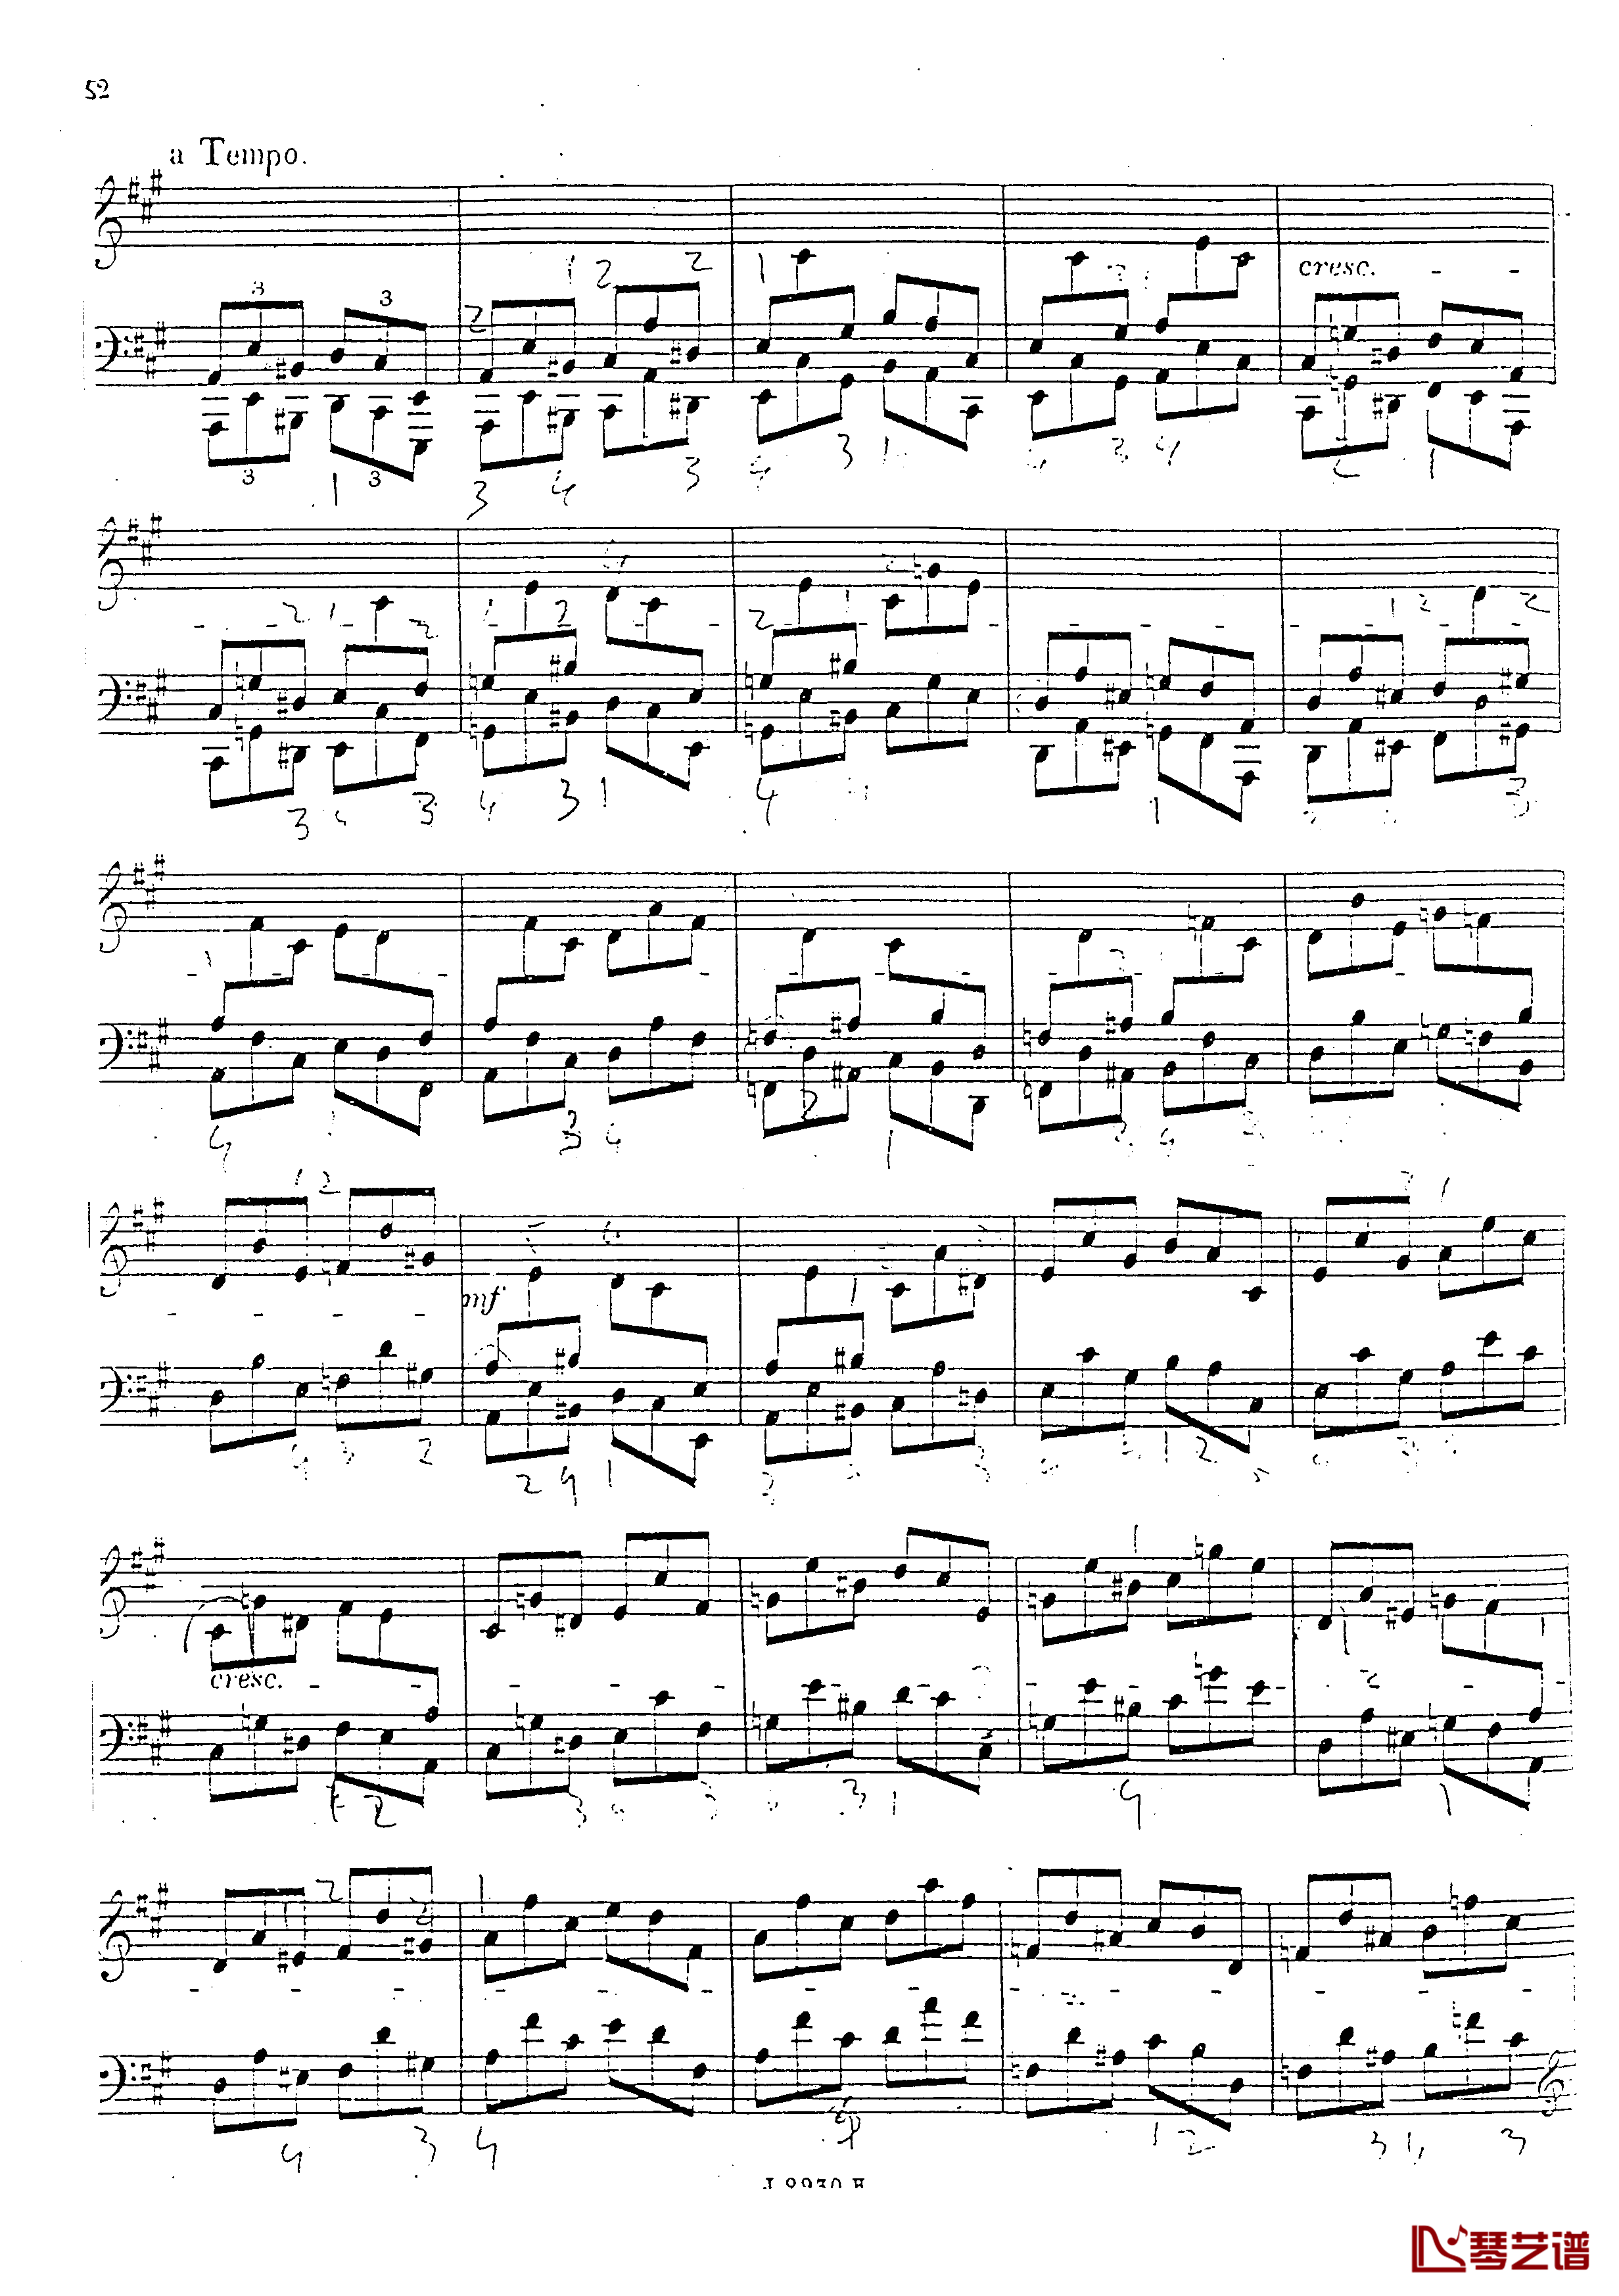 a小调第四钢琴奏鸣曲钢琴谱-安东 鲁宾斯坦- Op.10053